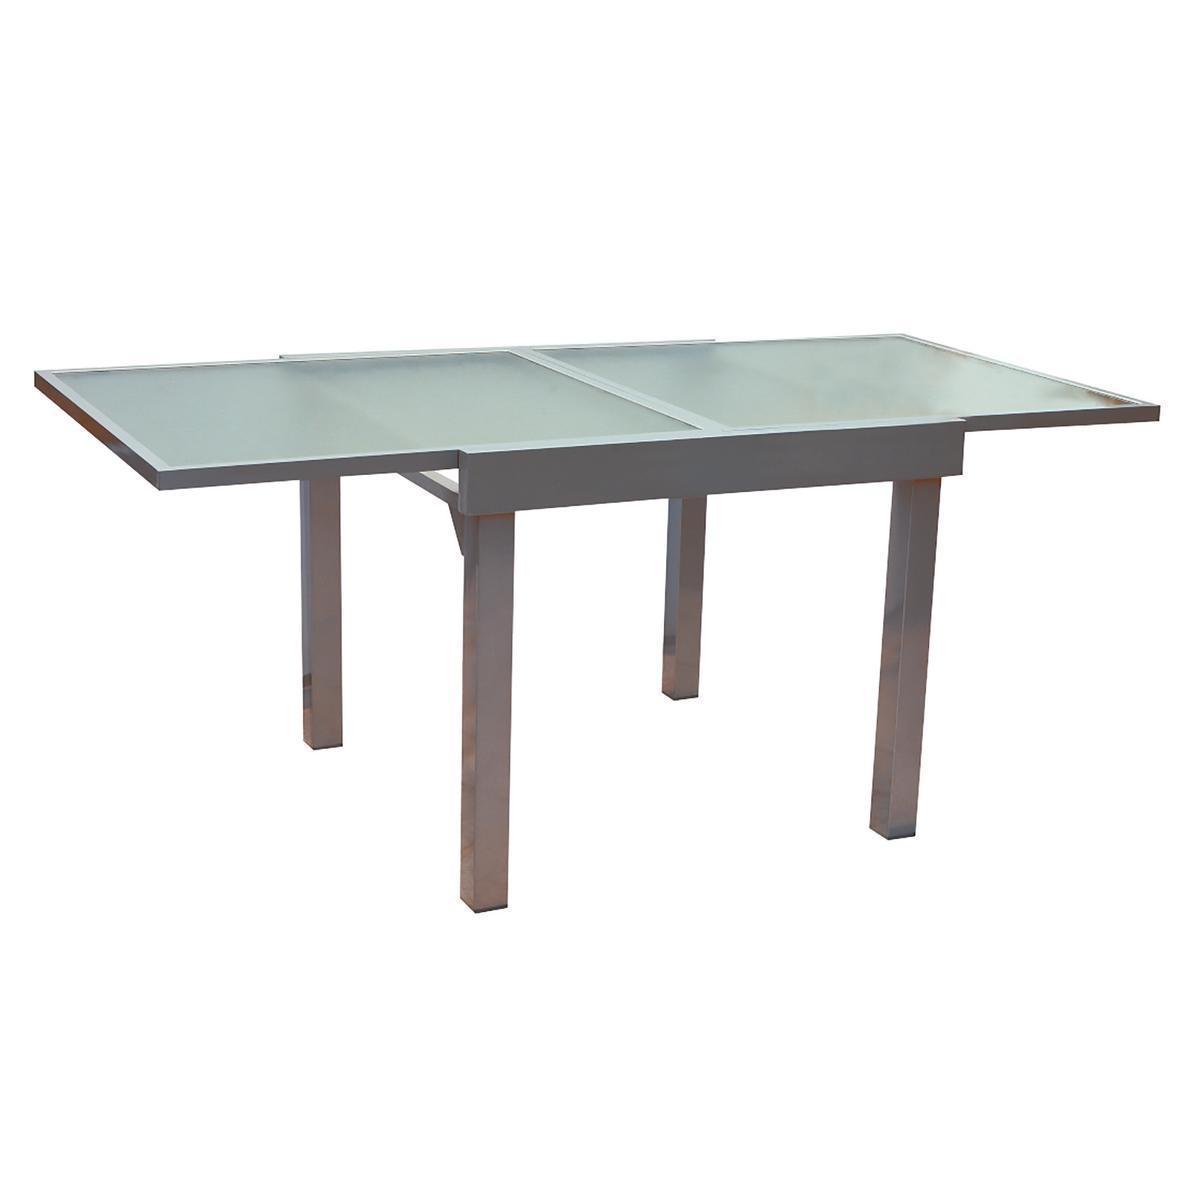 Table de jardin Naomi - Aluminium et Acier - 90 à 180 x 90 x H 75,5 cm - Gris